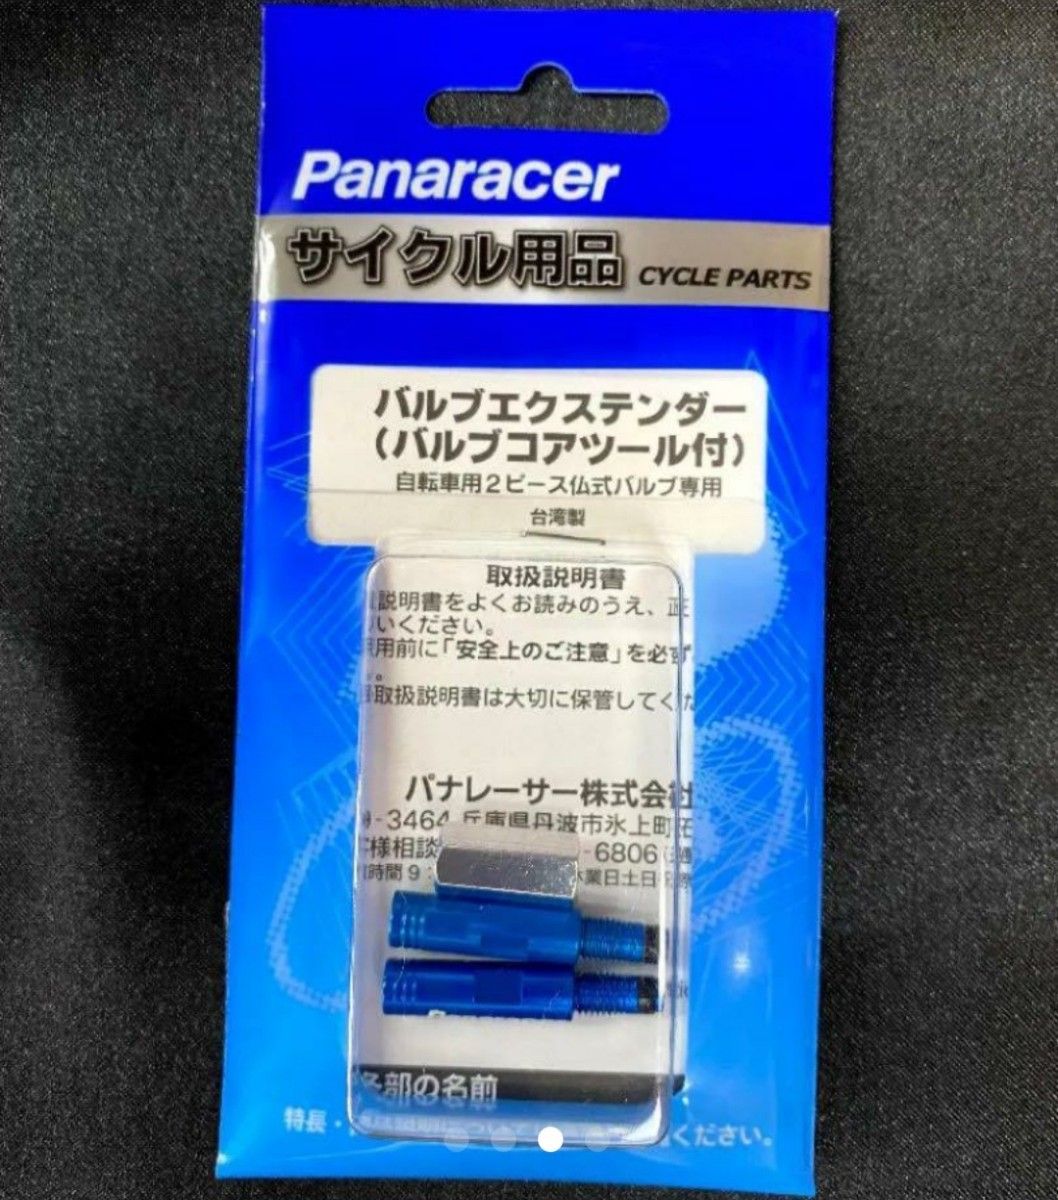 【新品】パナレーサーバルブエクステンダー20mm（仏式・バルブコアツール付き）